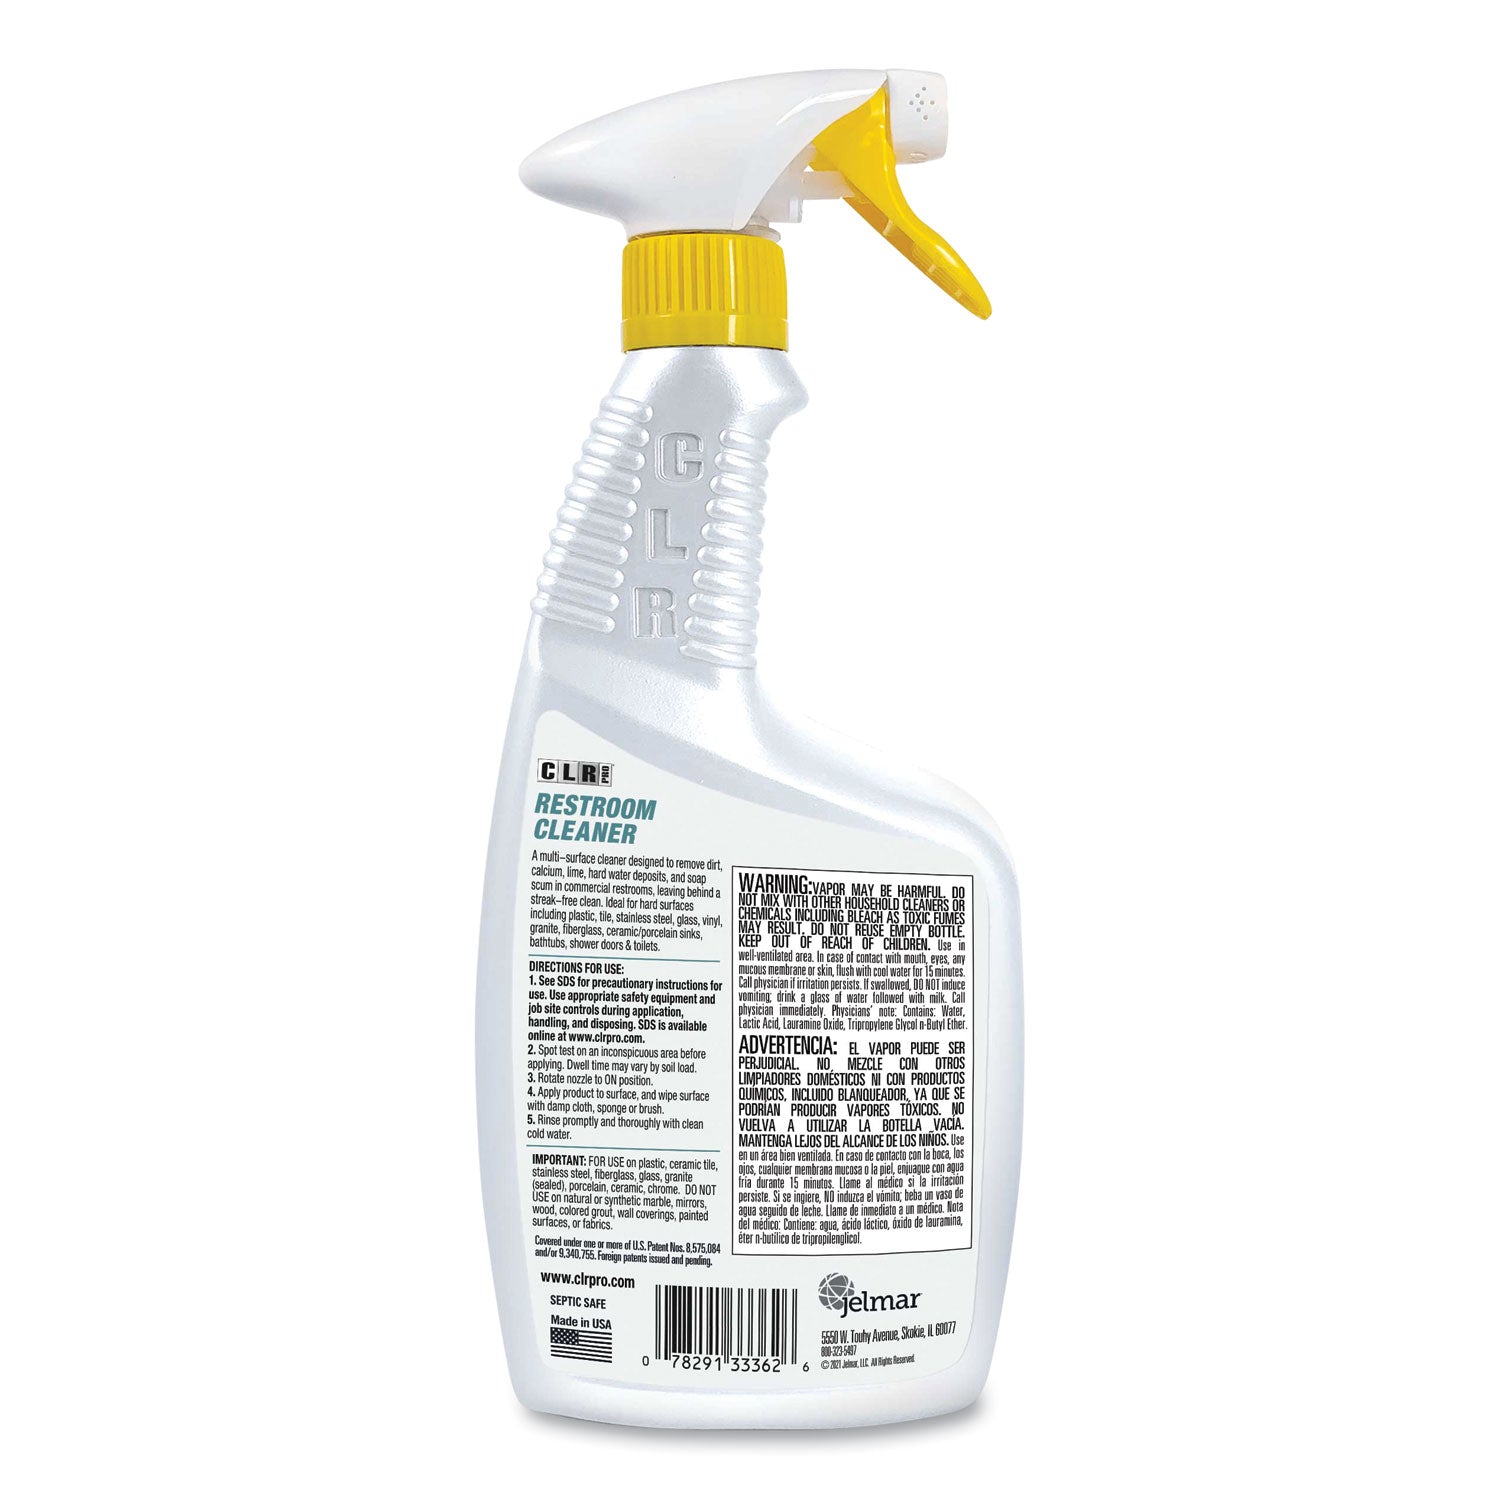 Restroom Cleaner, 32 oz Pump Spray, 6/Carton - 